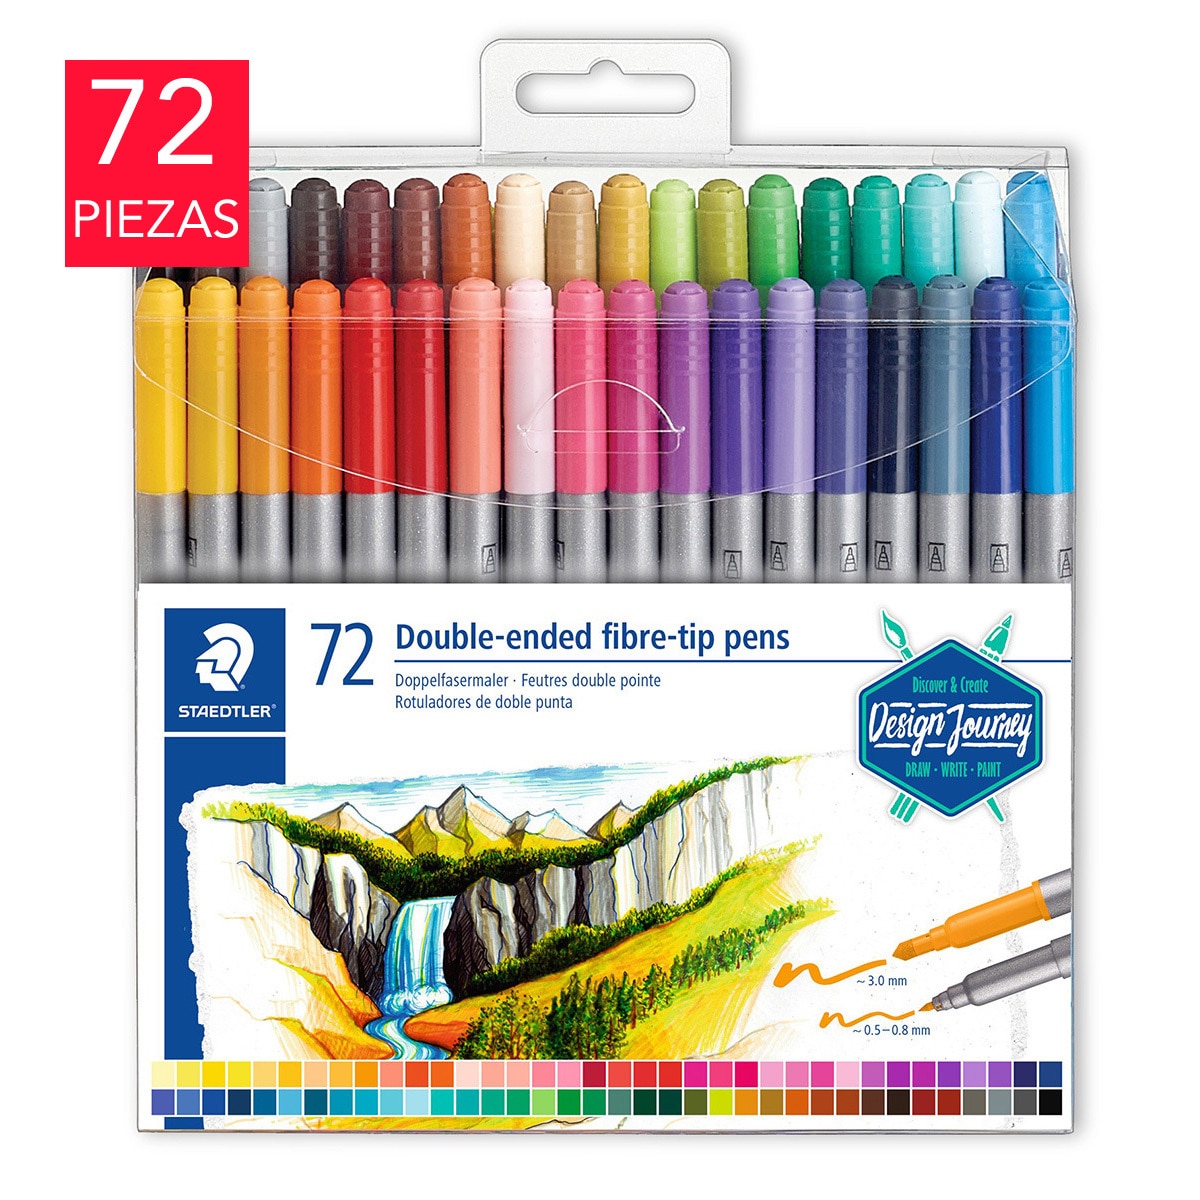 Crayola - Los plumones punta pincel de Crayola® son